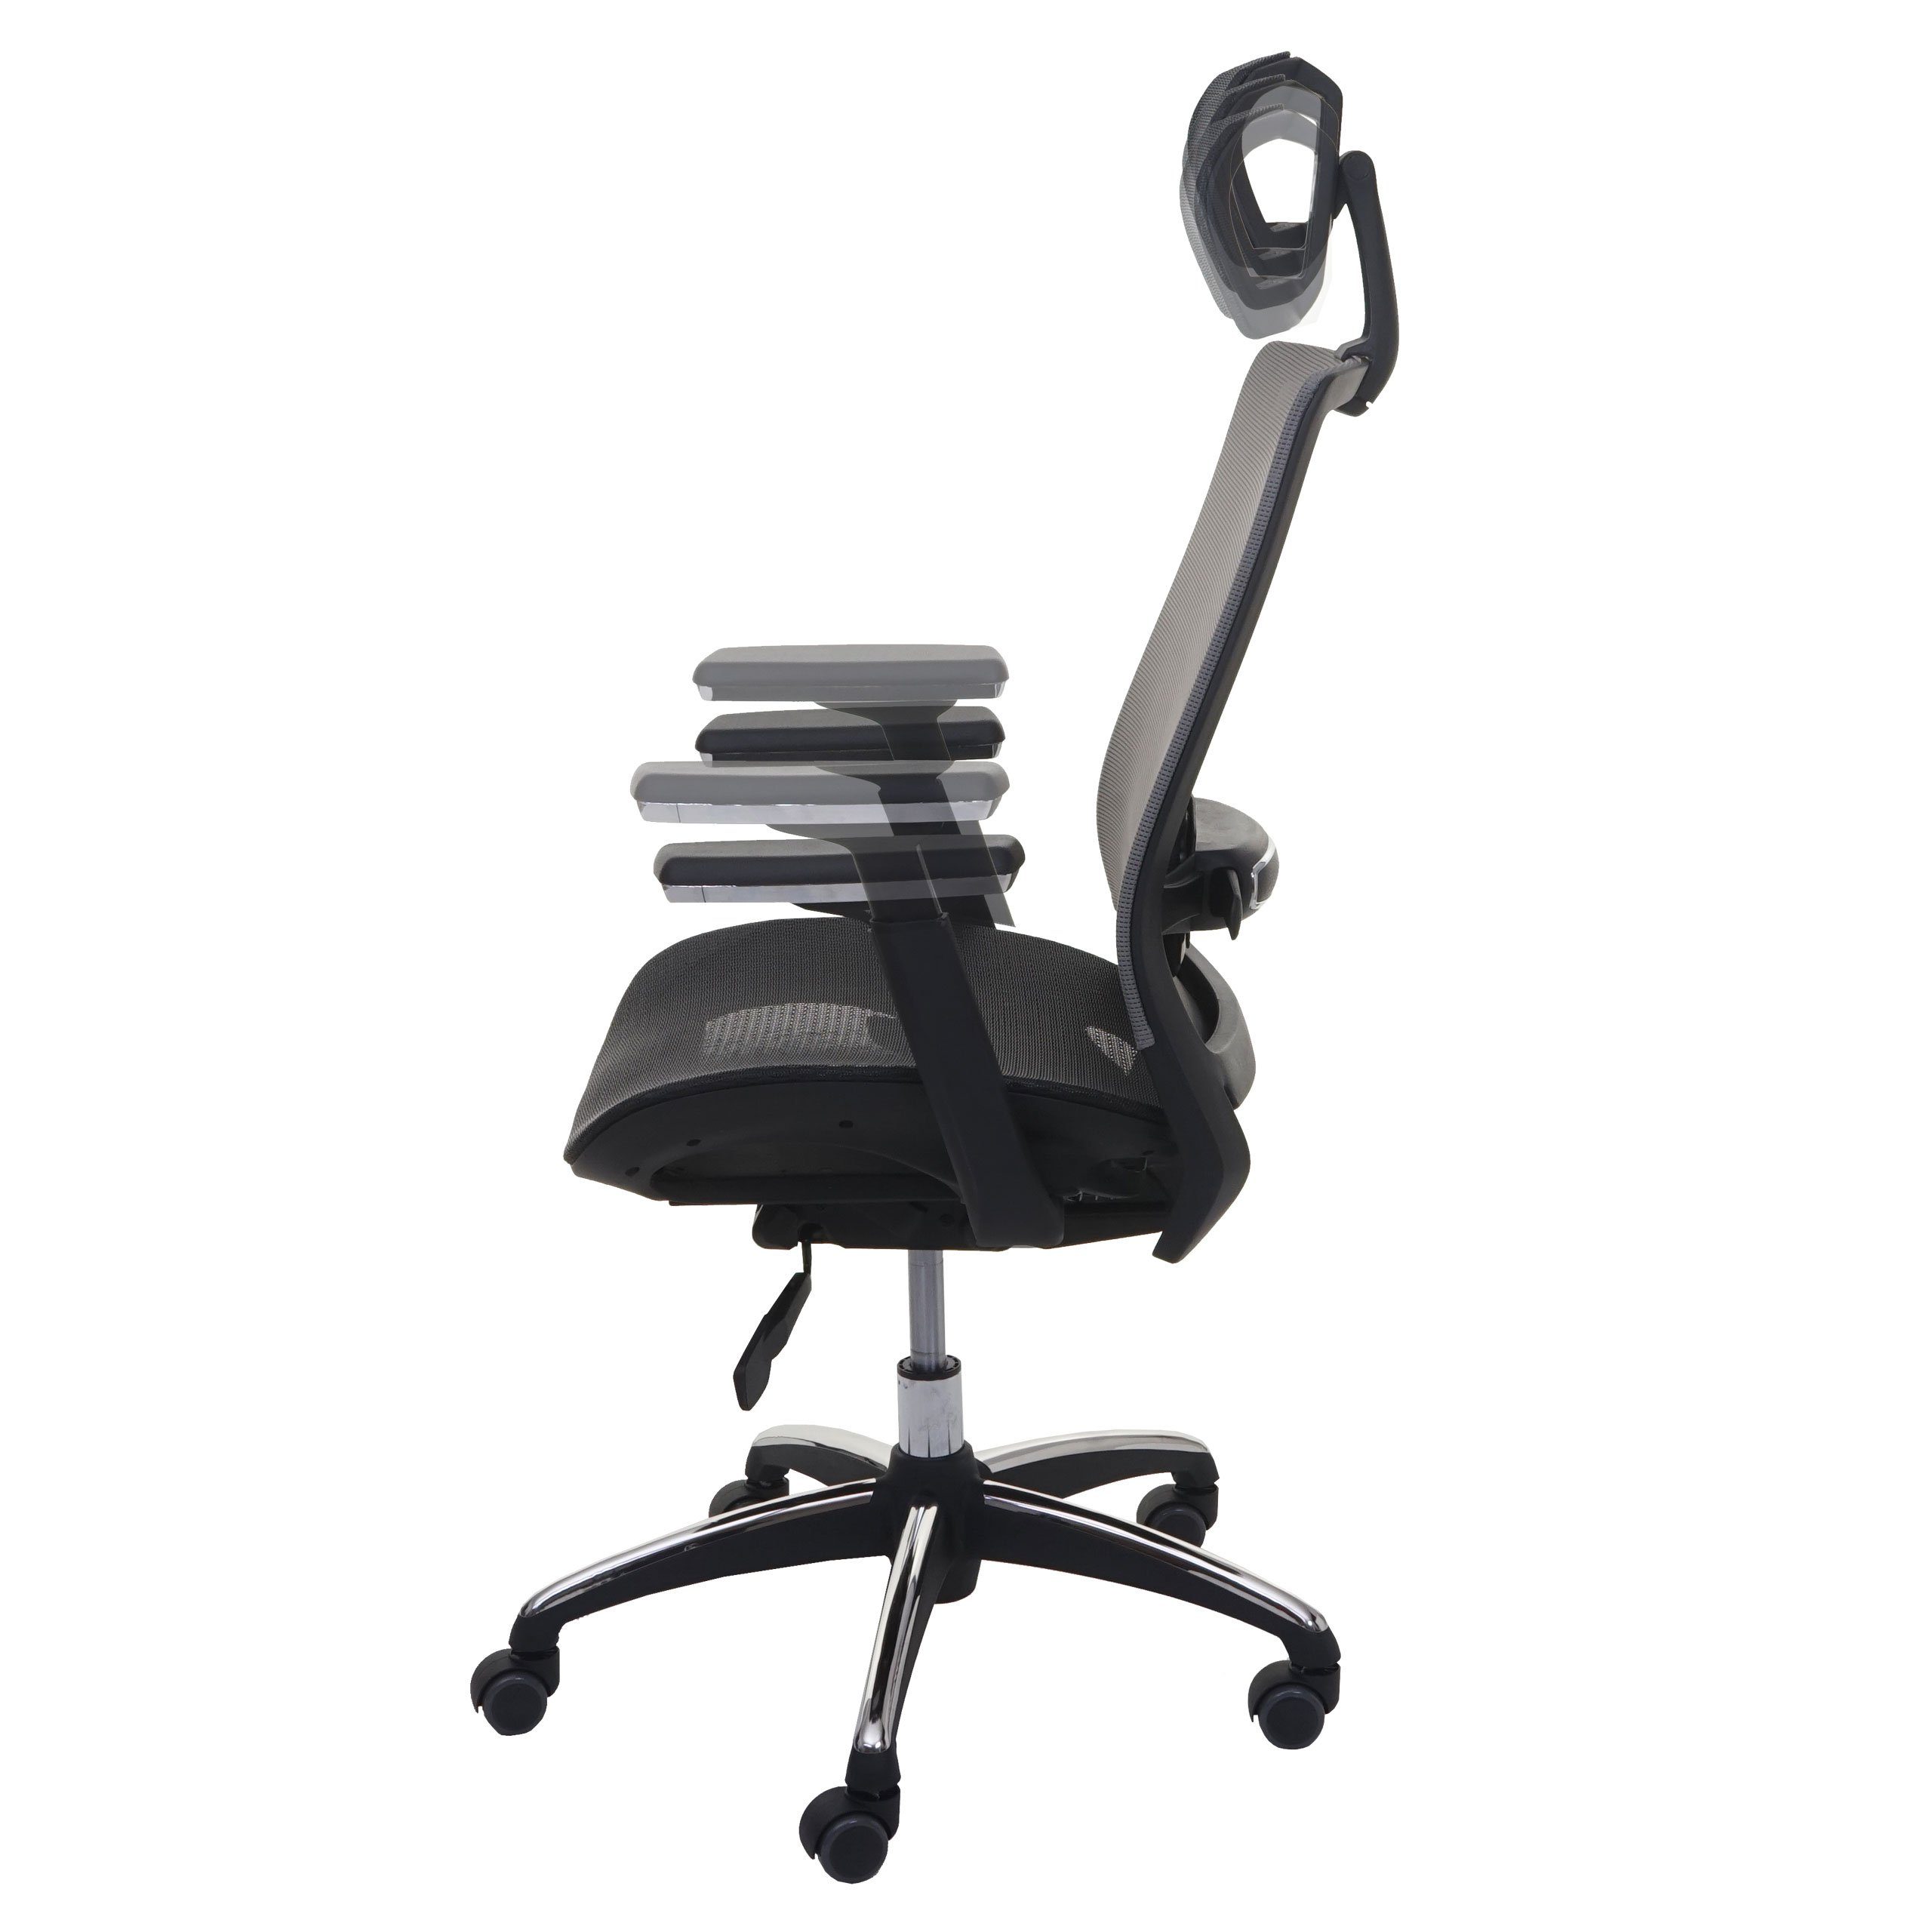 MCW Schreibtischstuhl MCW-A20, In der schwarz-grau anpassbar verstellbare Sitzfläche, Lendenwirbelstütze Tiefe